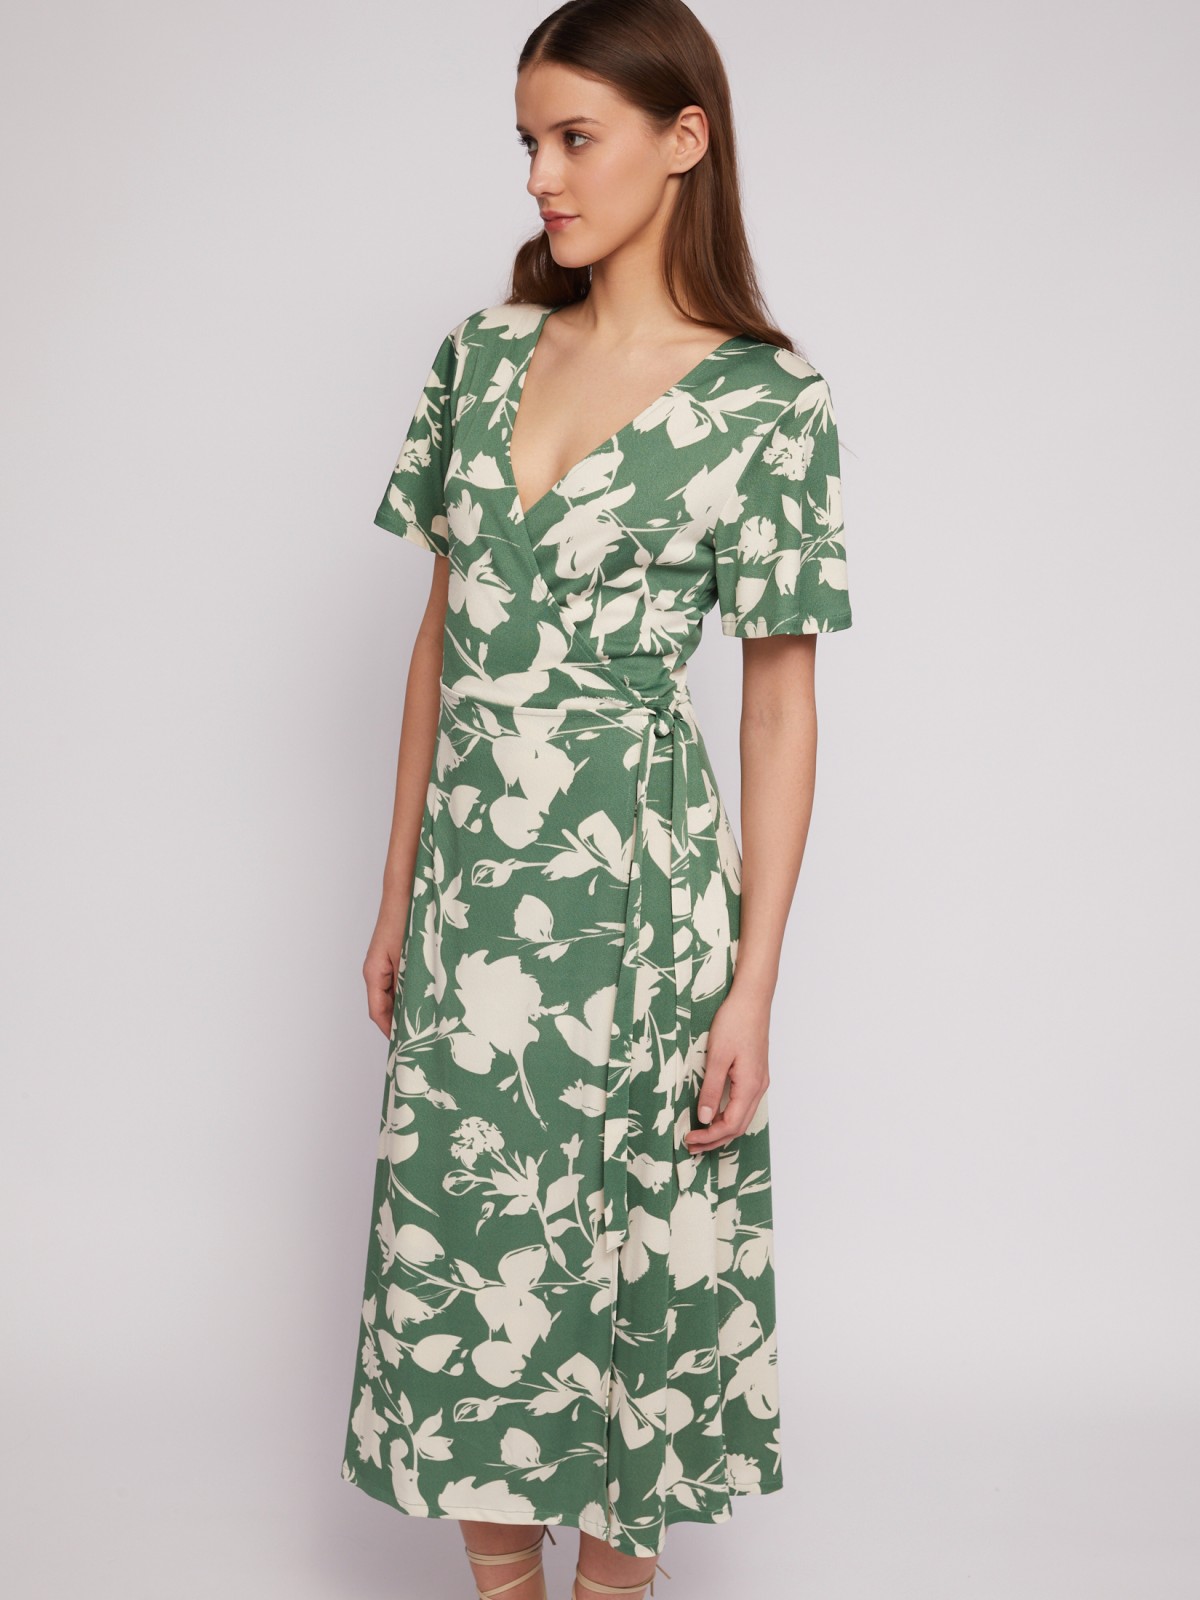 Приталенное платье-халат с запахом и растительным принтом zolla N24218159111, цвет зеленый, размер M - фото 3